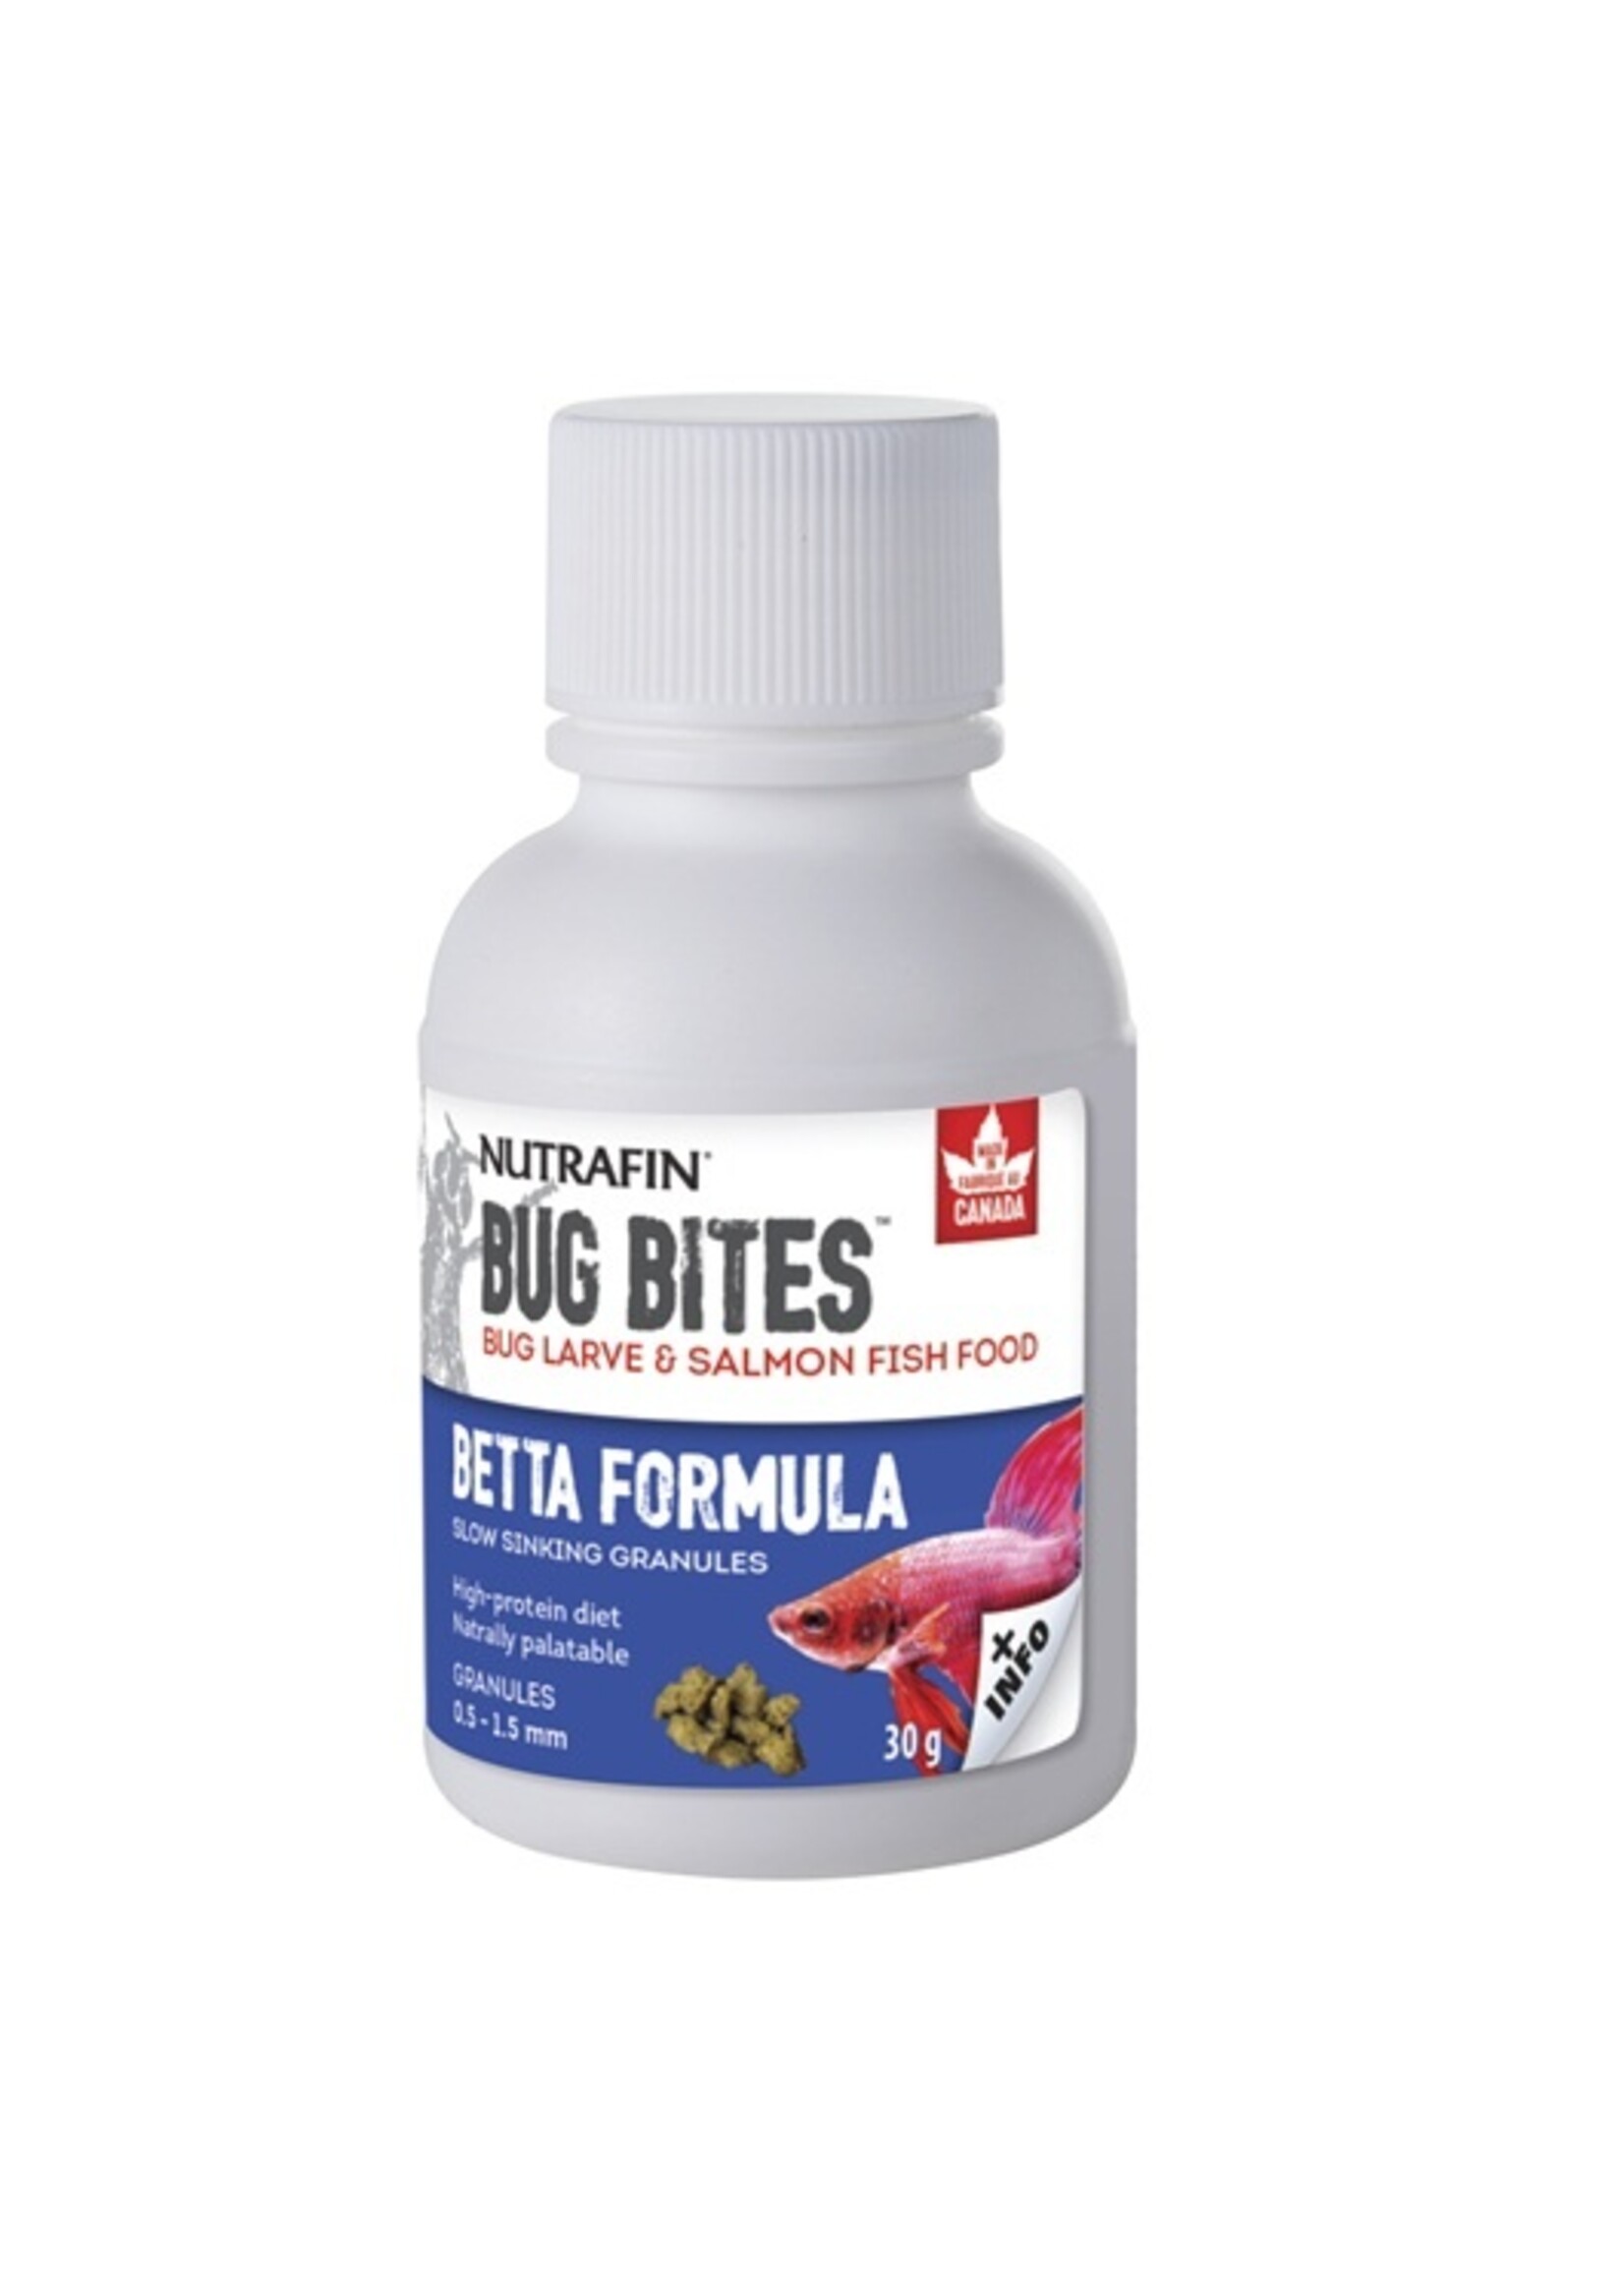 Fluval Fluval Bug Bites Betta 0.5-1.5mm granules 30g